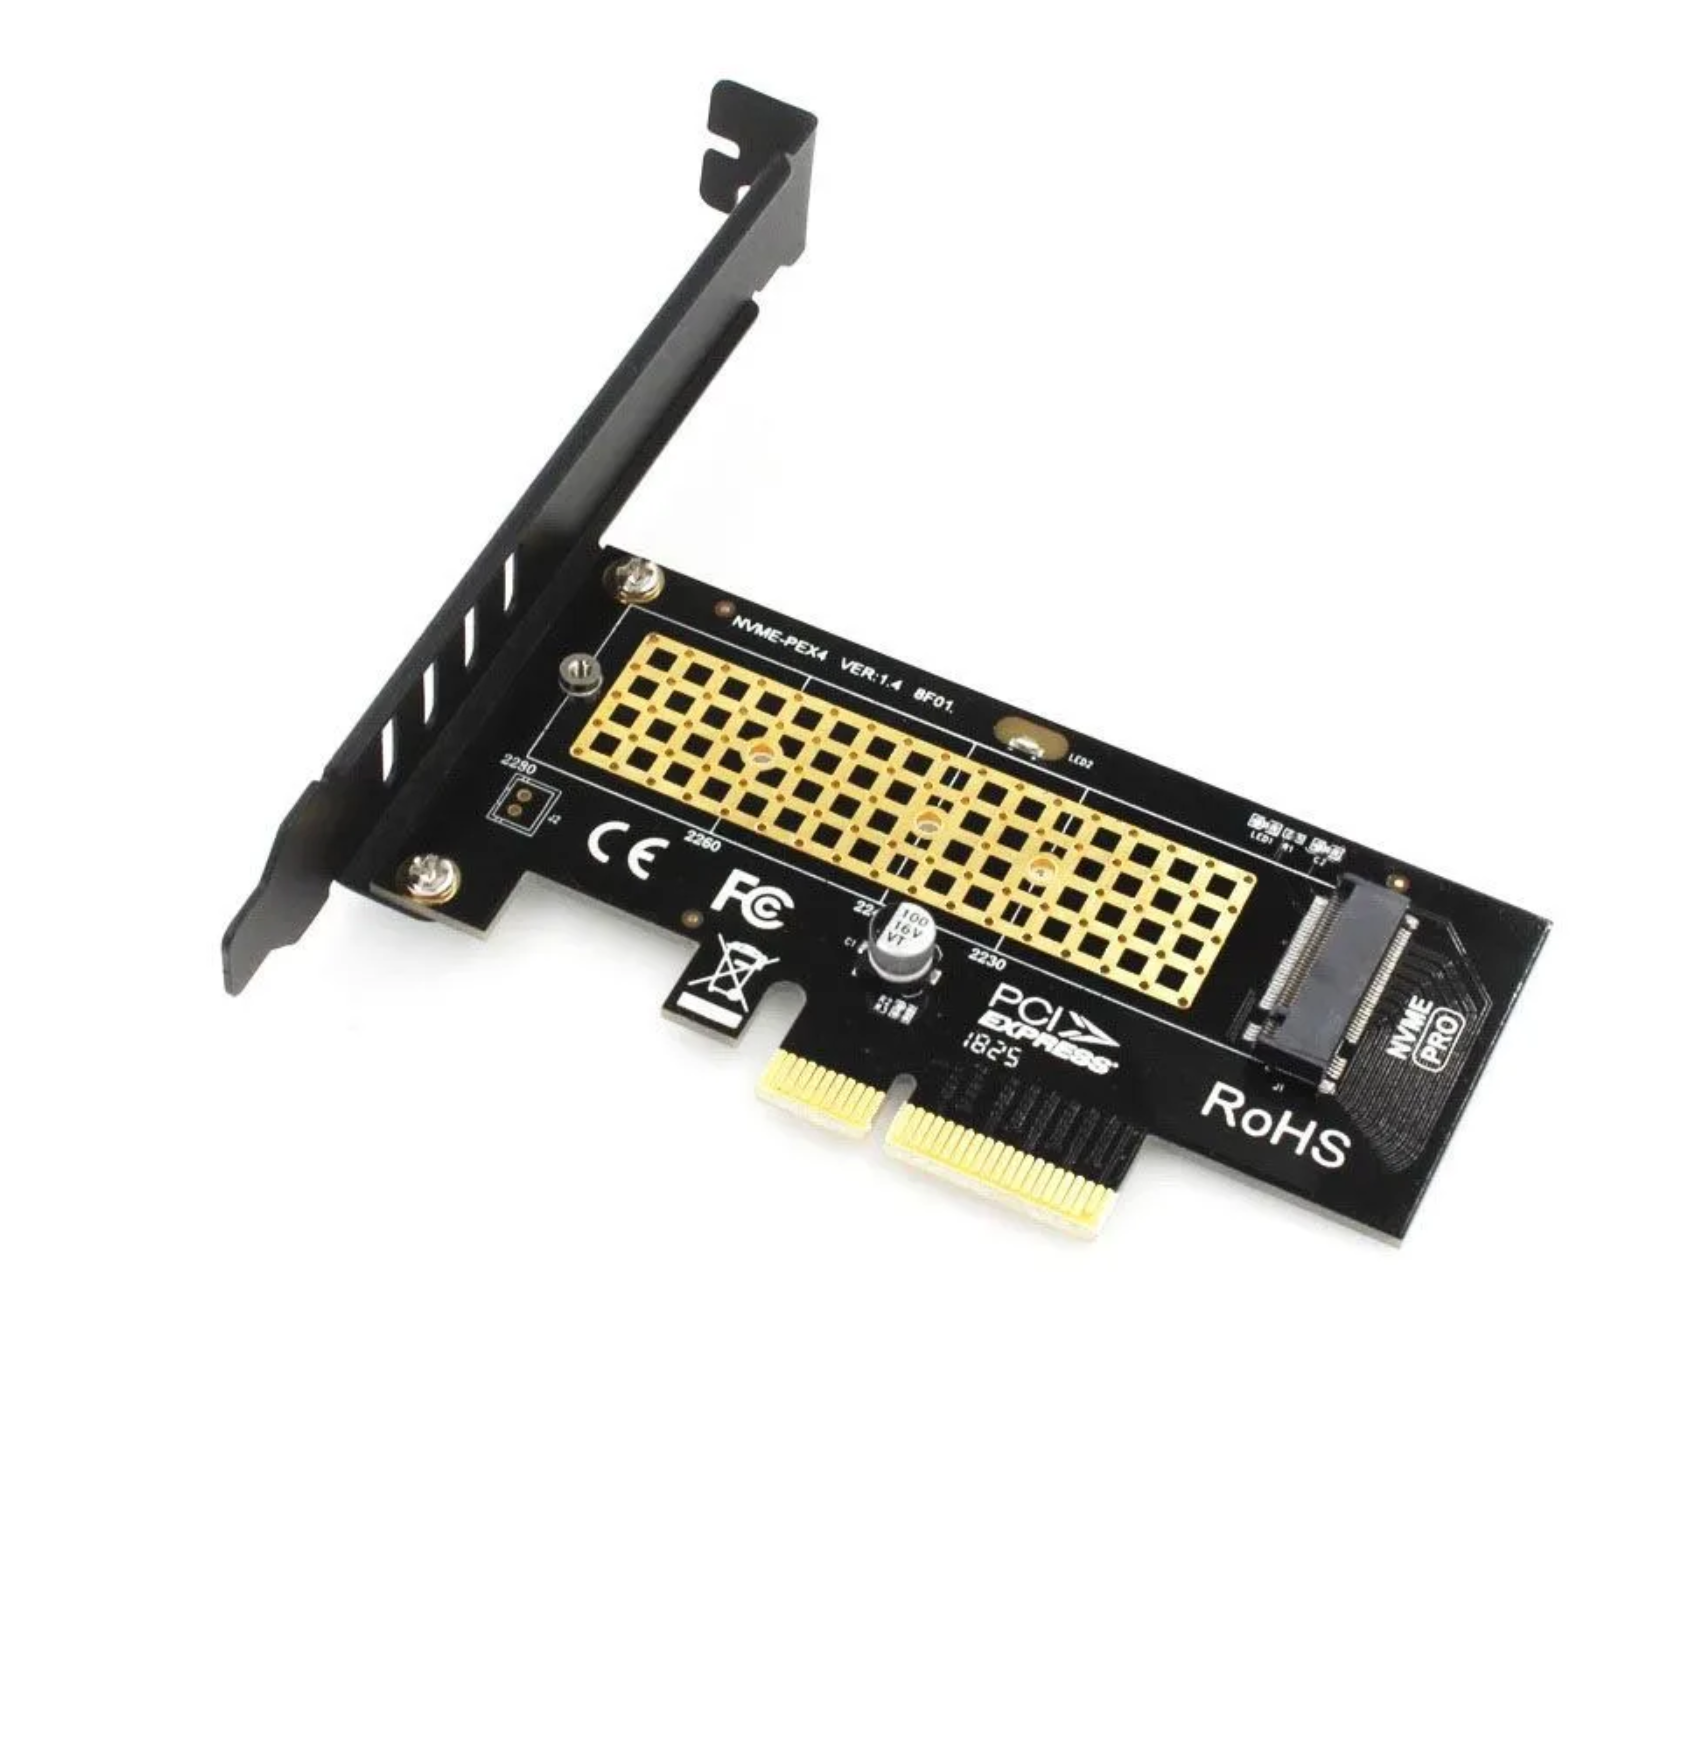 Адаптер M.2 на PCIE X1 для SSD NVMe модель SK4 для форматов 22x30, 22x42, 22x60 и 22x80 мм, ключ M, поддержка PCIE X4 X8 X16